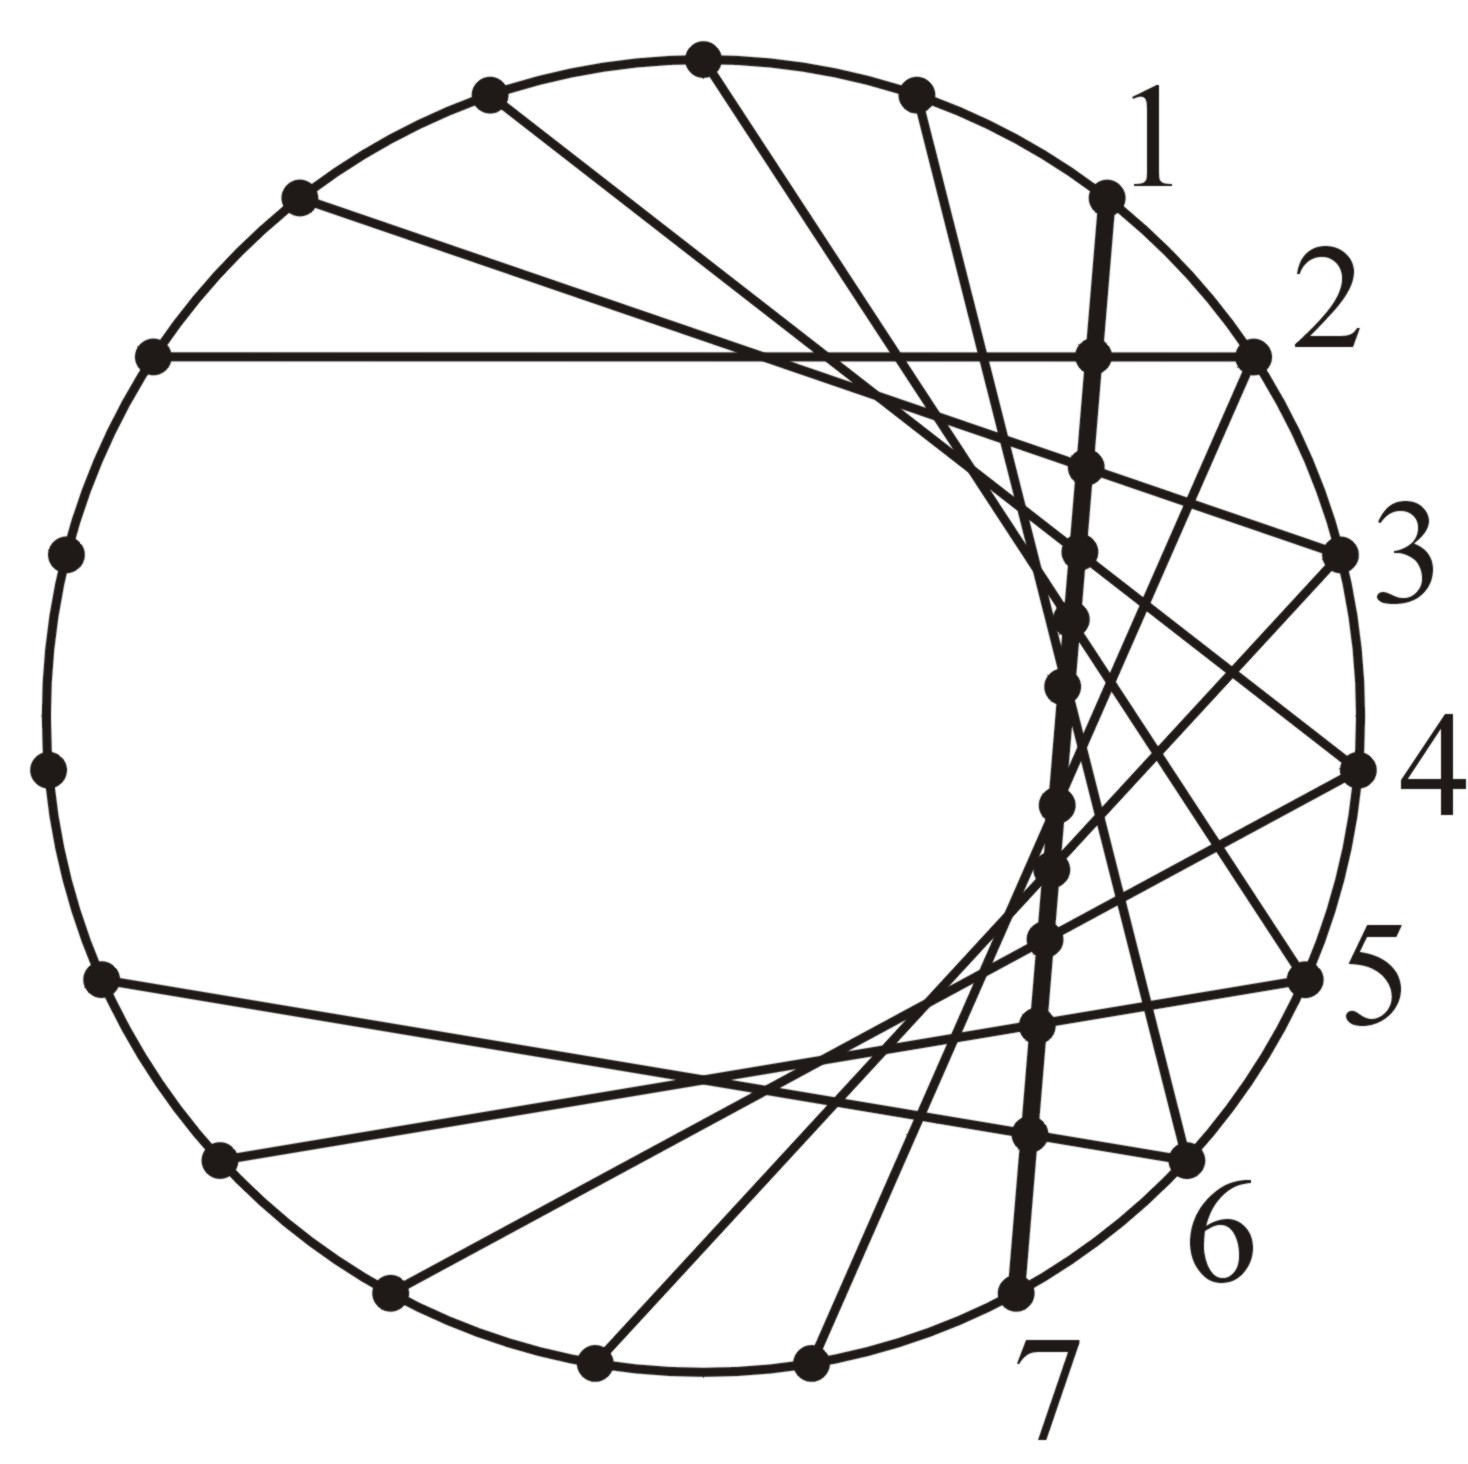 Aşağıdaki süsleme şekli, bir çember üzerindeki 19 noktanın her birisinin saat yönünde ilerleyerek kendisinden sonra gelen 6. noktayla birleştirilmesiyle elde edilmiştir.